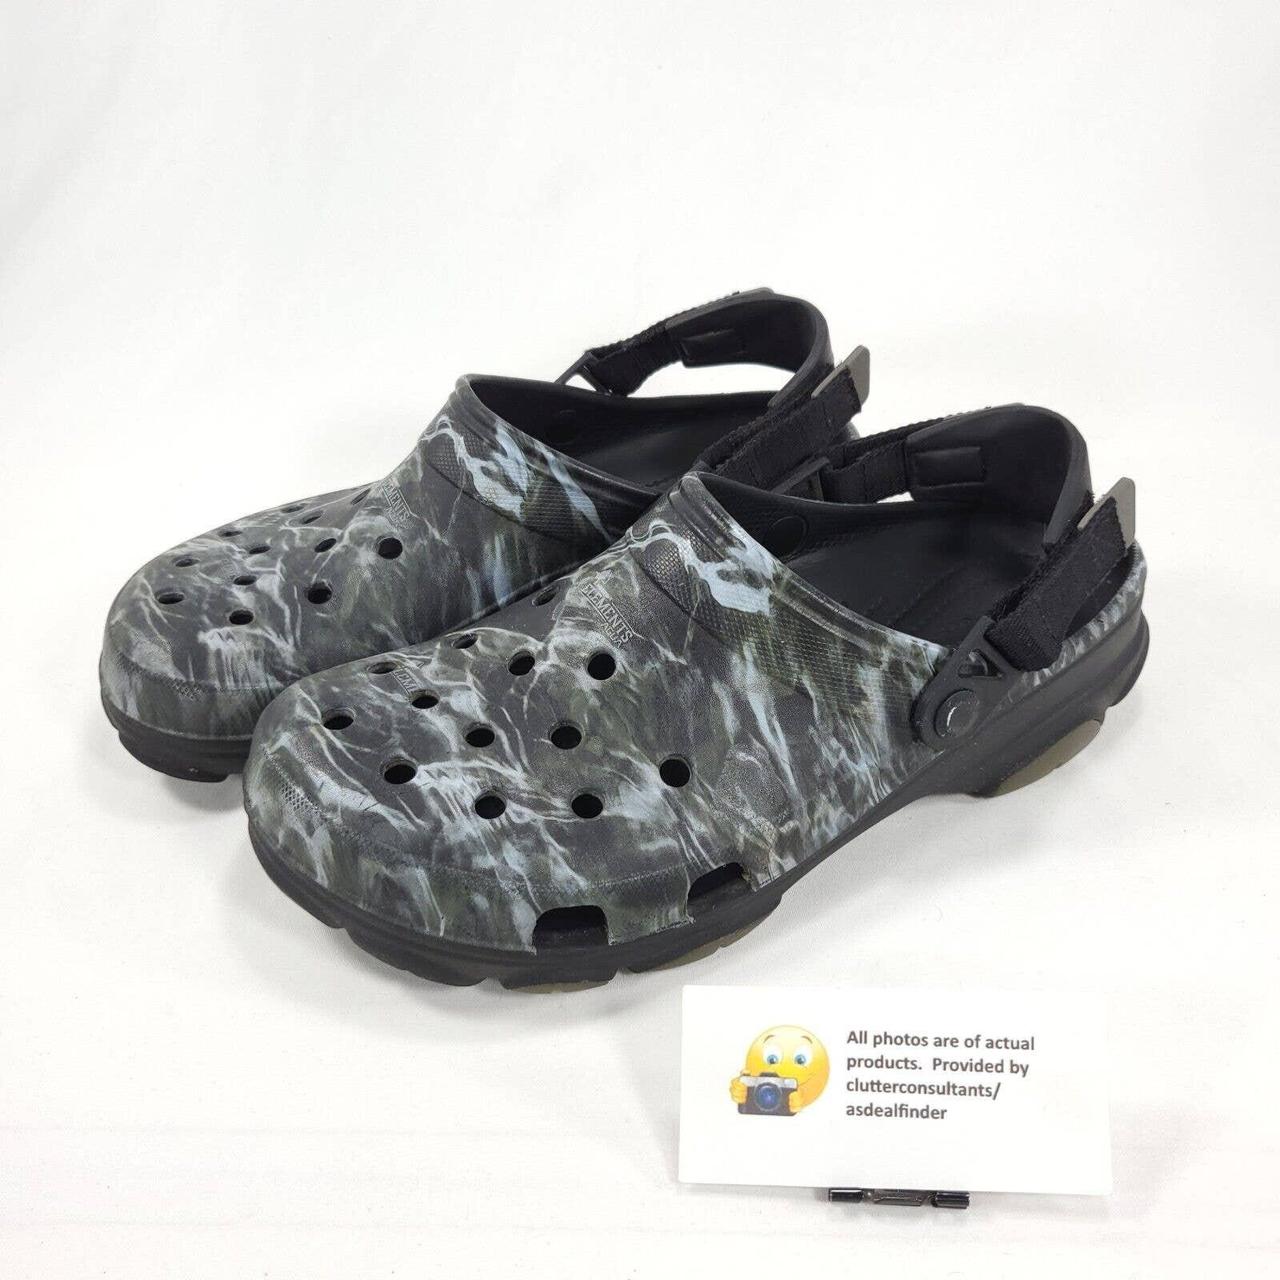 Crocs Mossy Oak Elements Comfort Mule Clog Womens - Depop